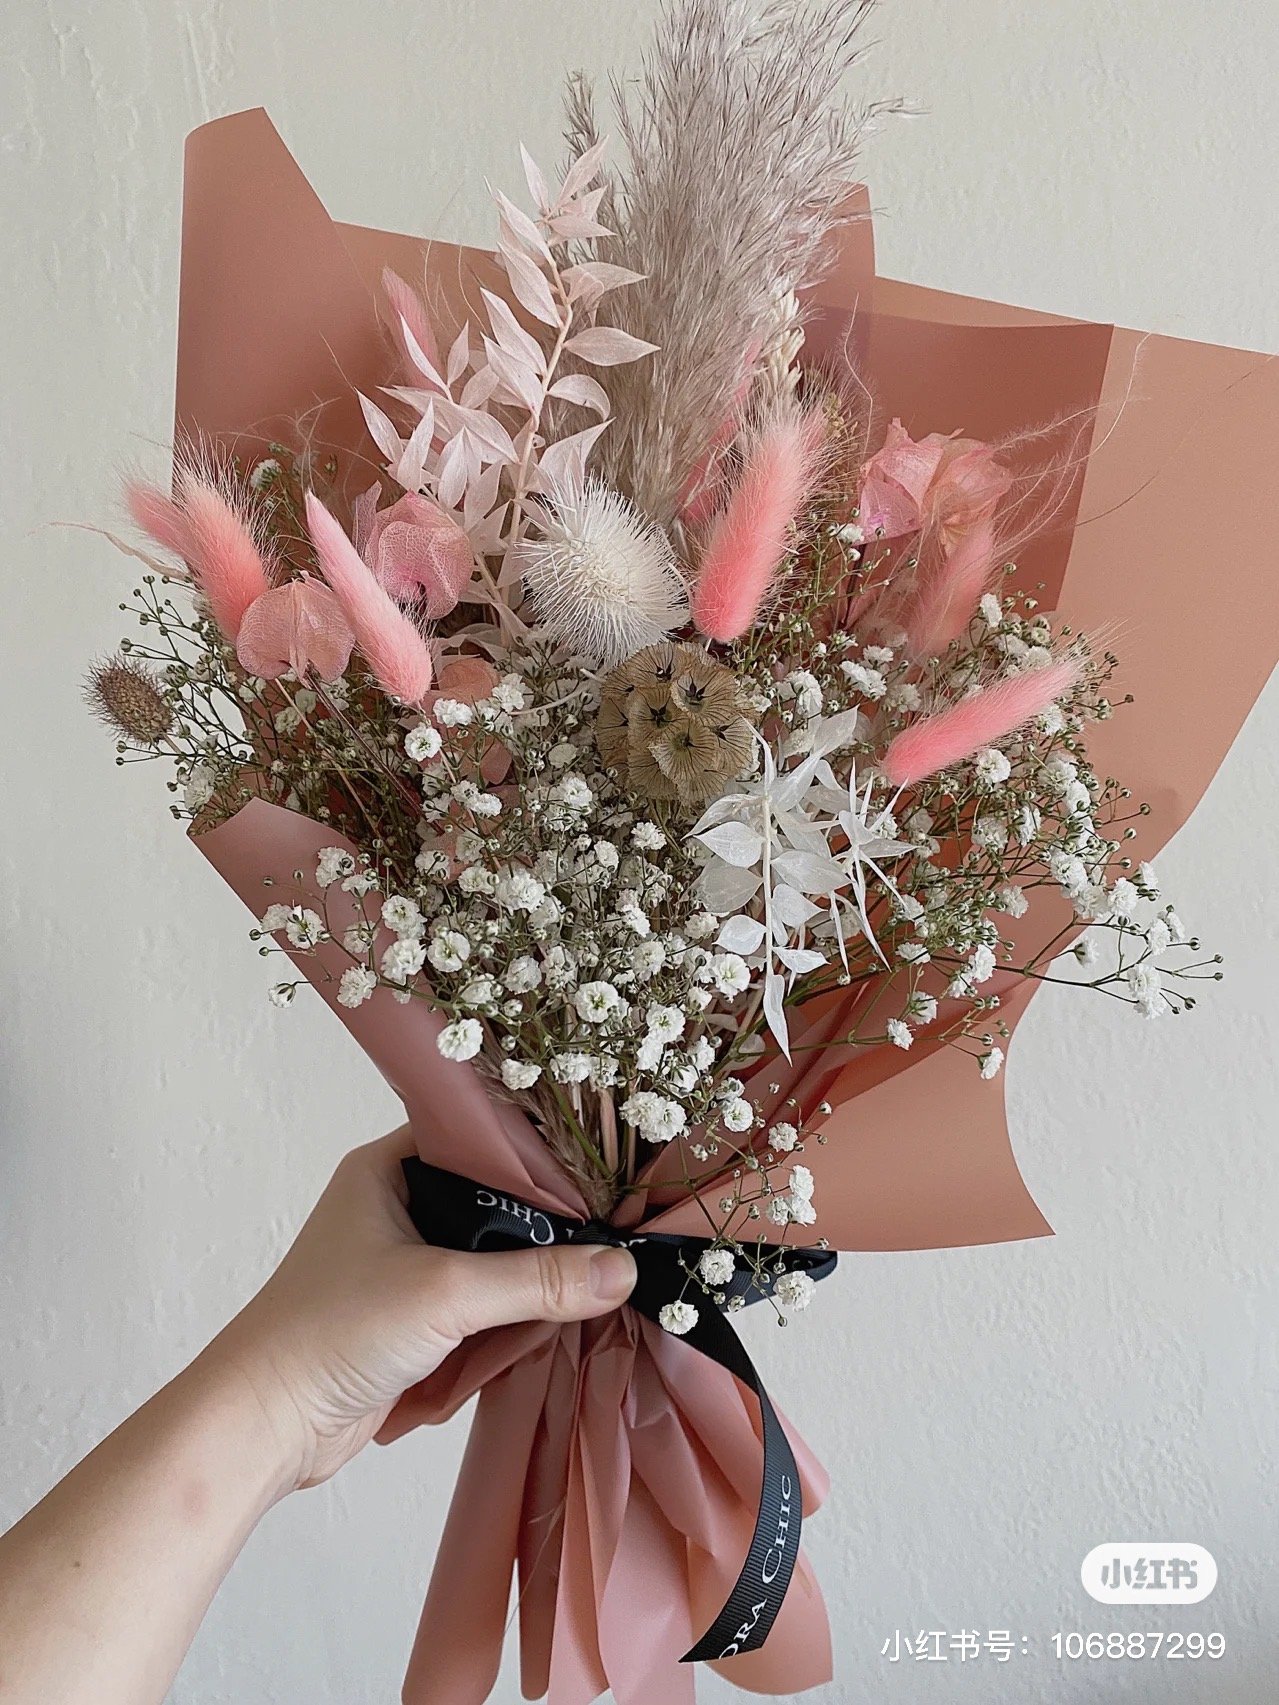 Dry flower bouquet — The Florachic